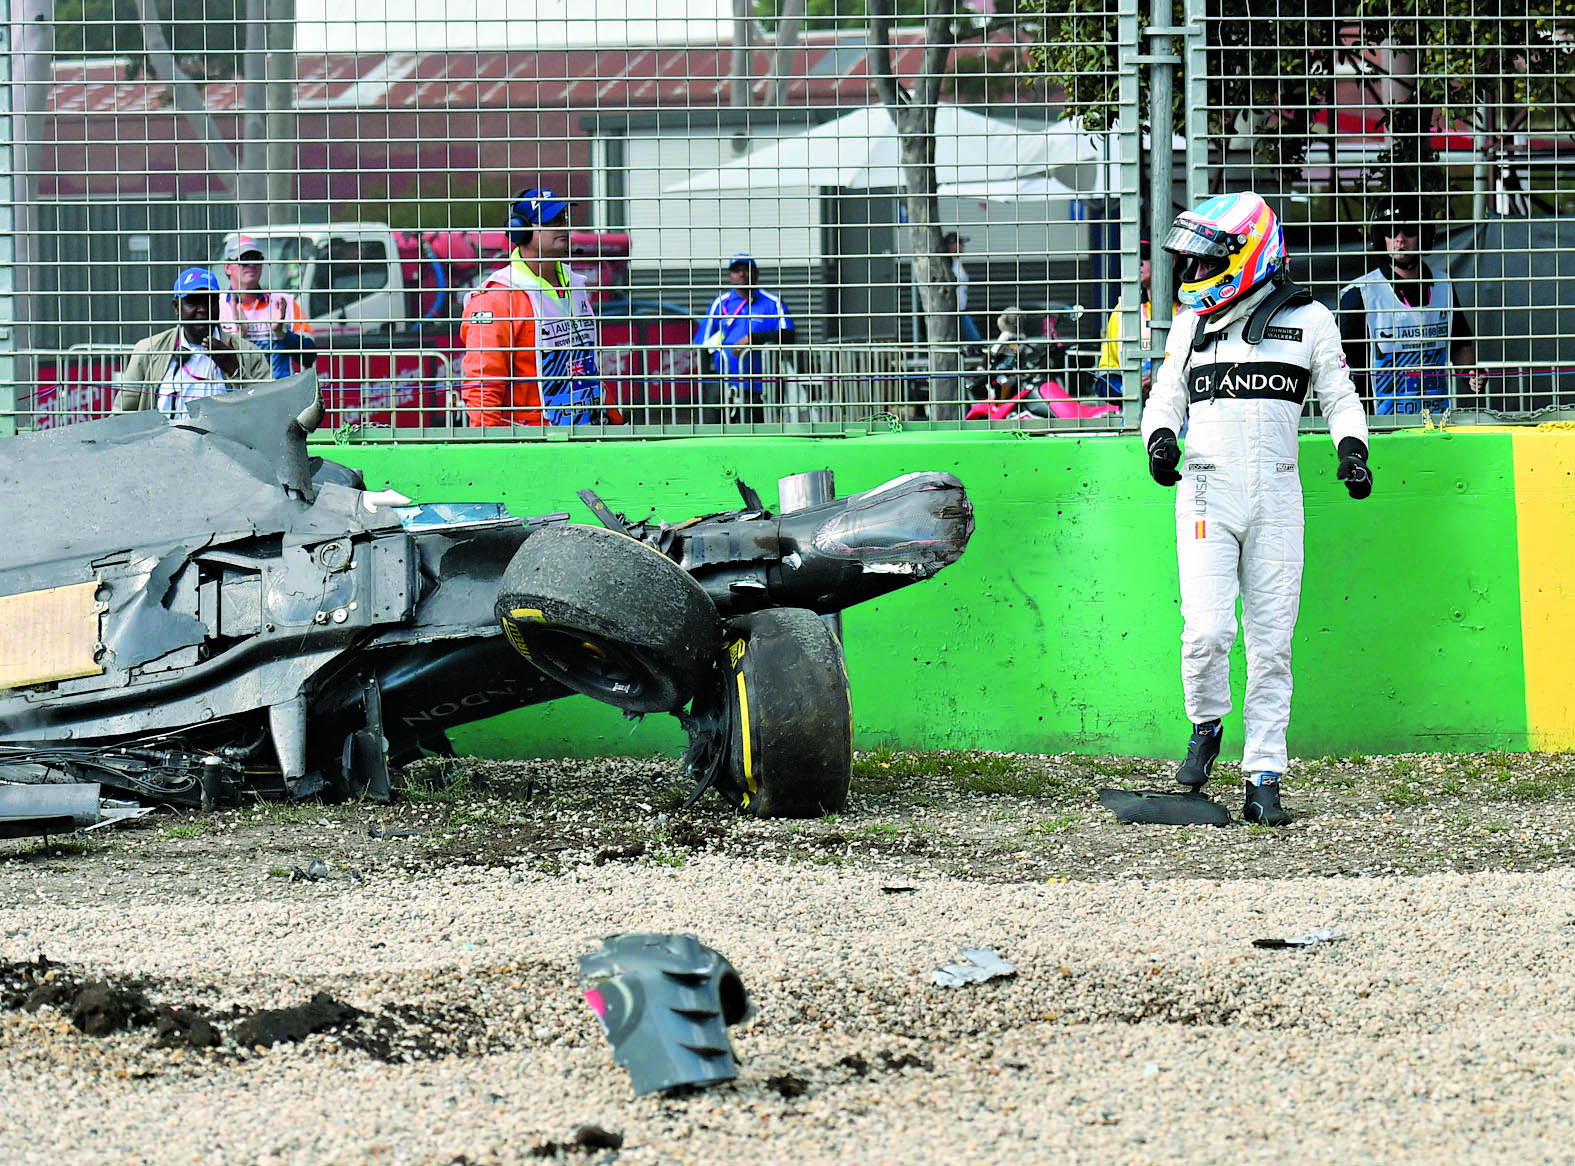 Alonso escapa ileso num acidente a 315 km/h e reabre a discussão das regras de segurança na F1